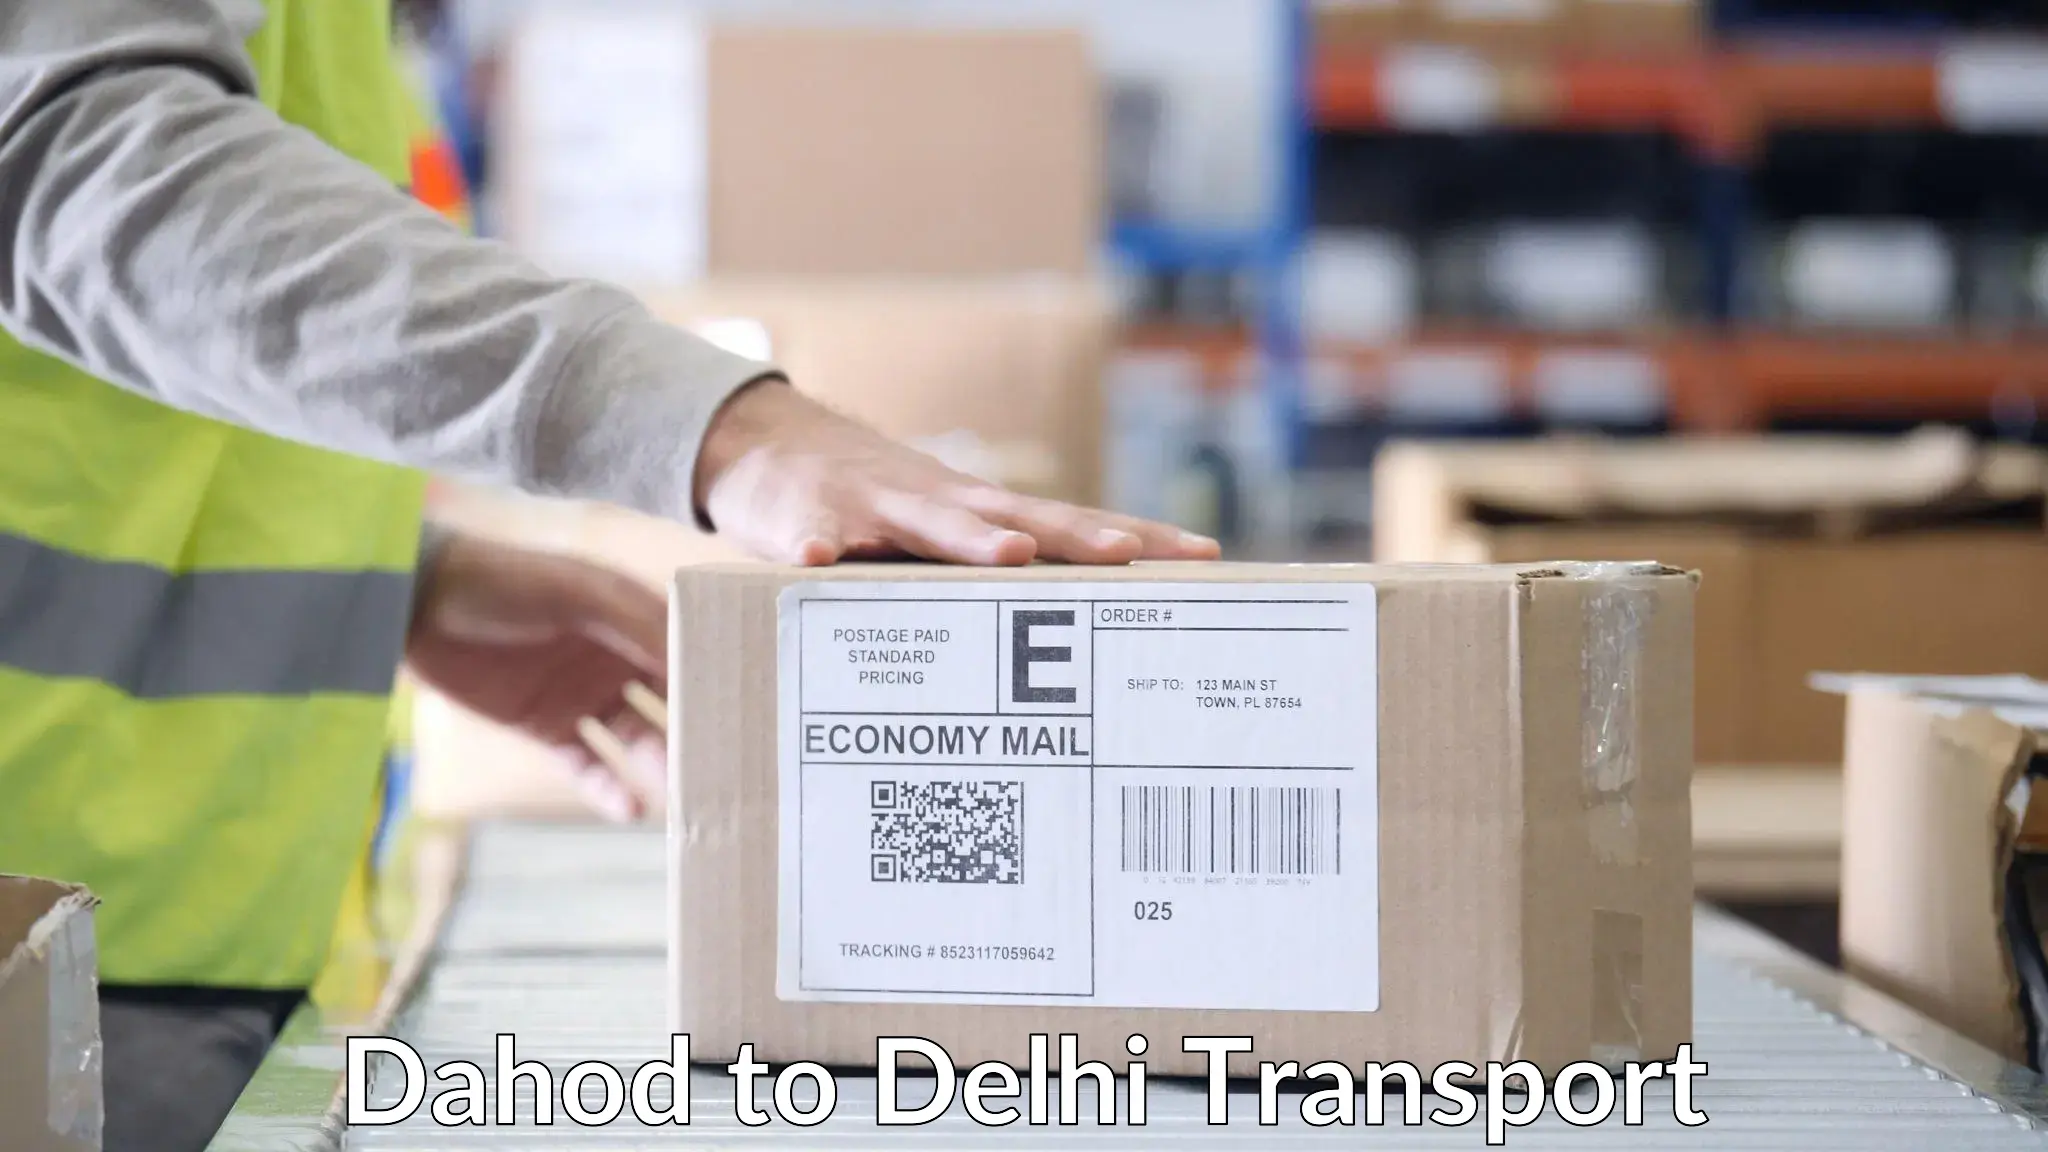 Parcel transport services Dahod to Delhi